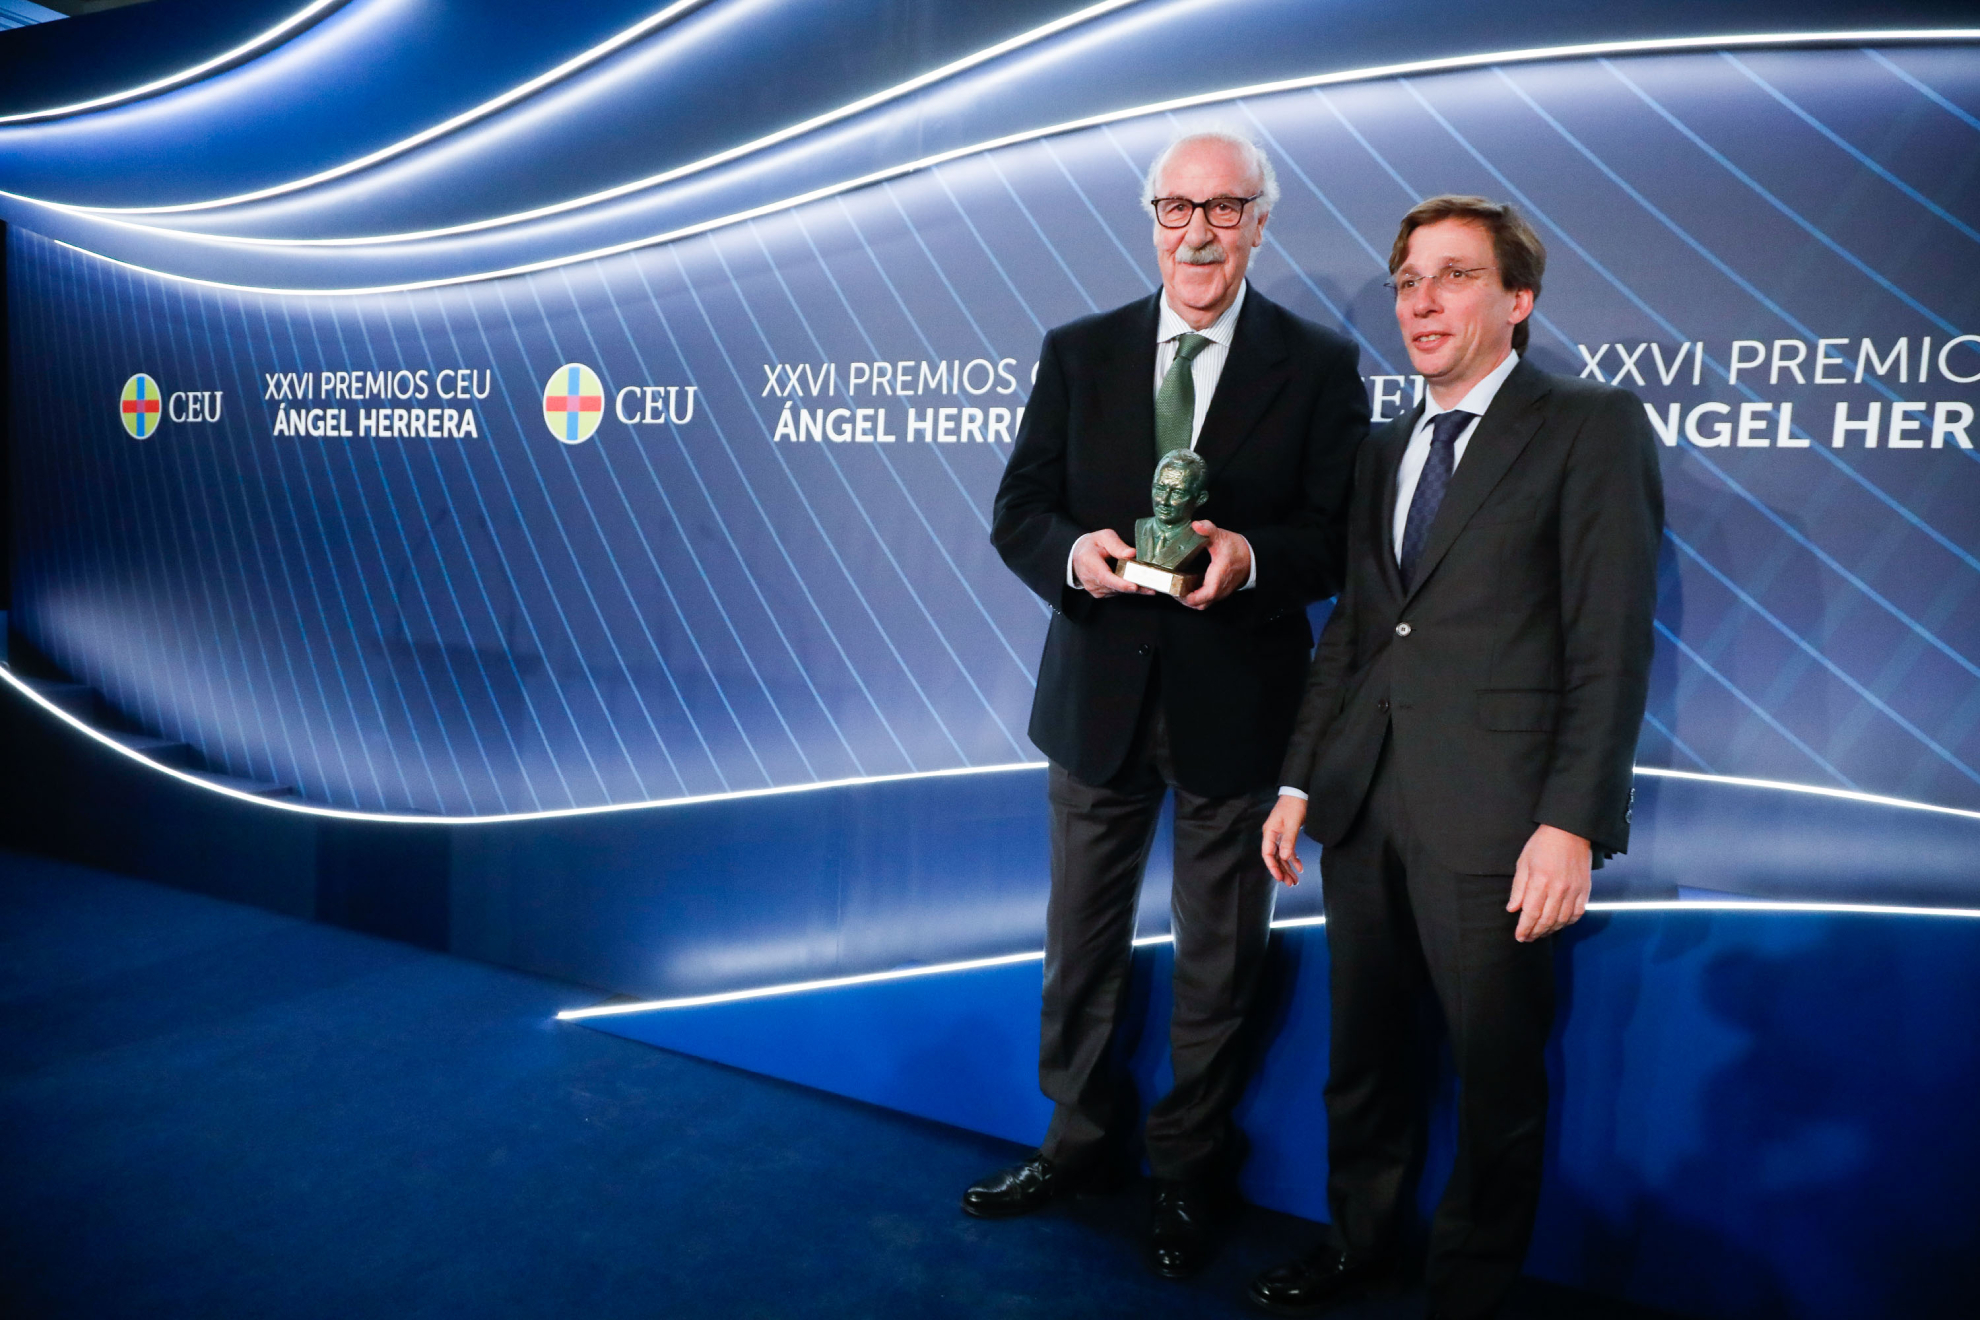 Vicente Del Bosque recibe el premio "tica y Valores" por su liderazgo "humilde y sencillo"